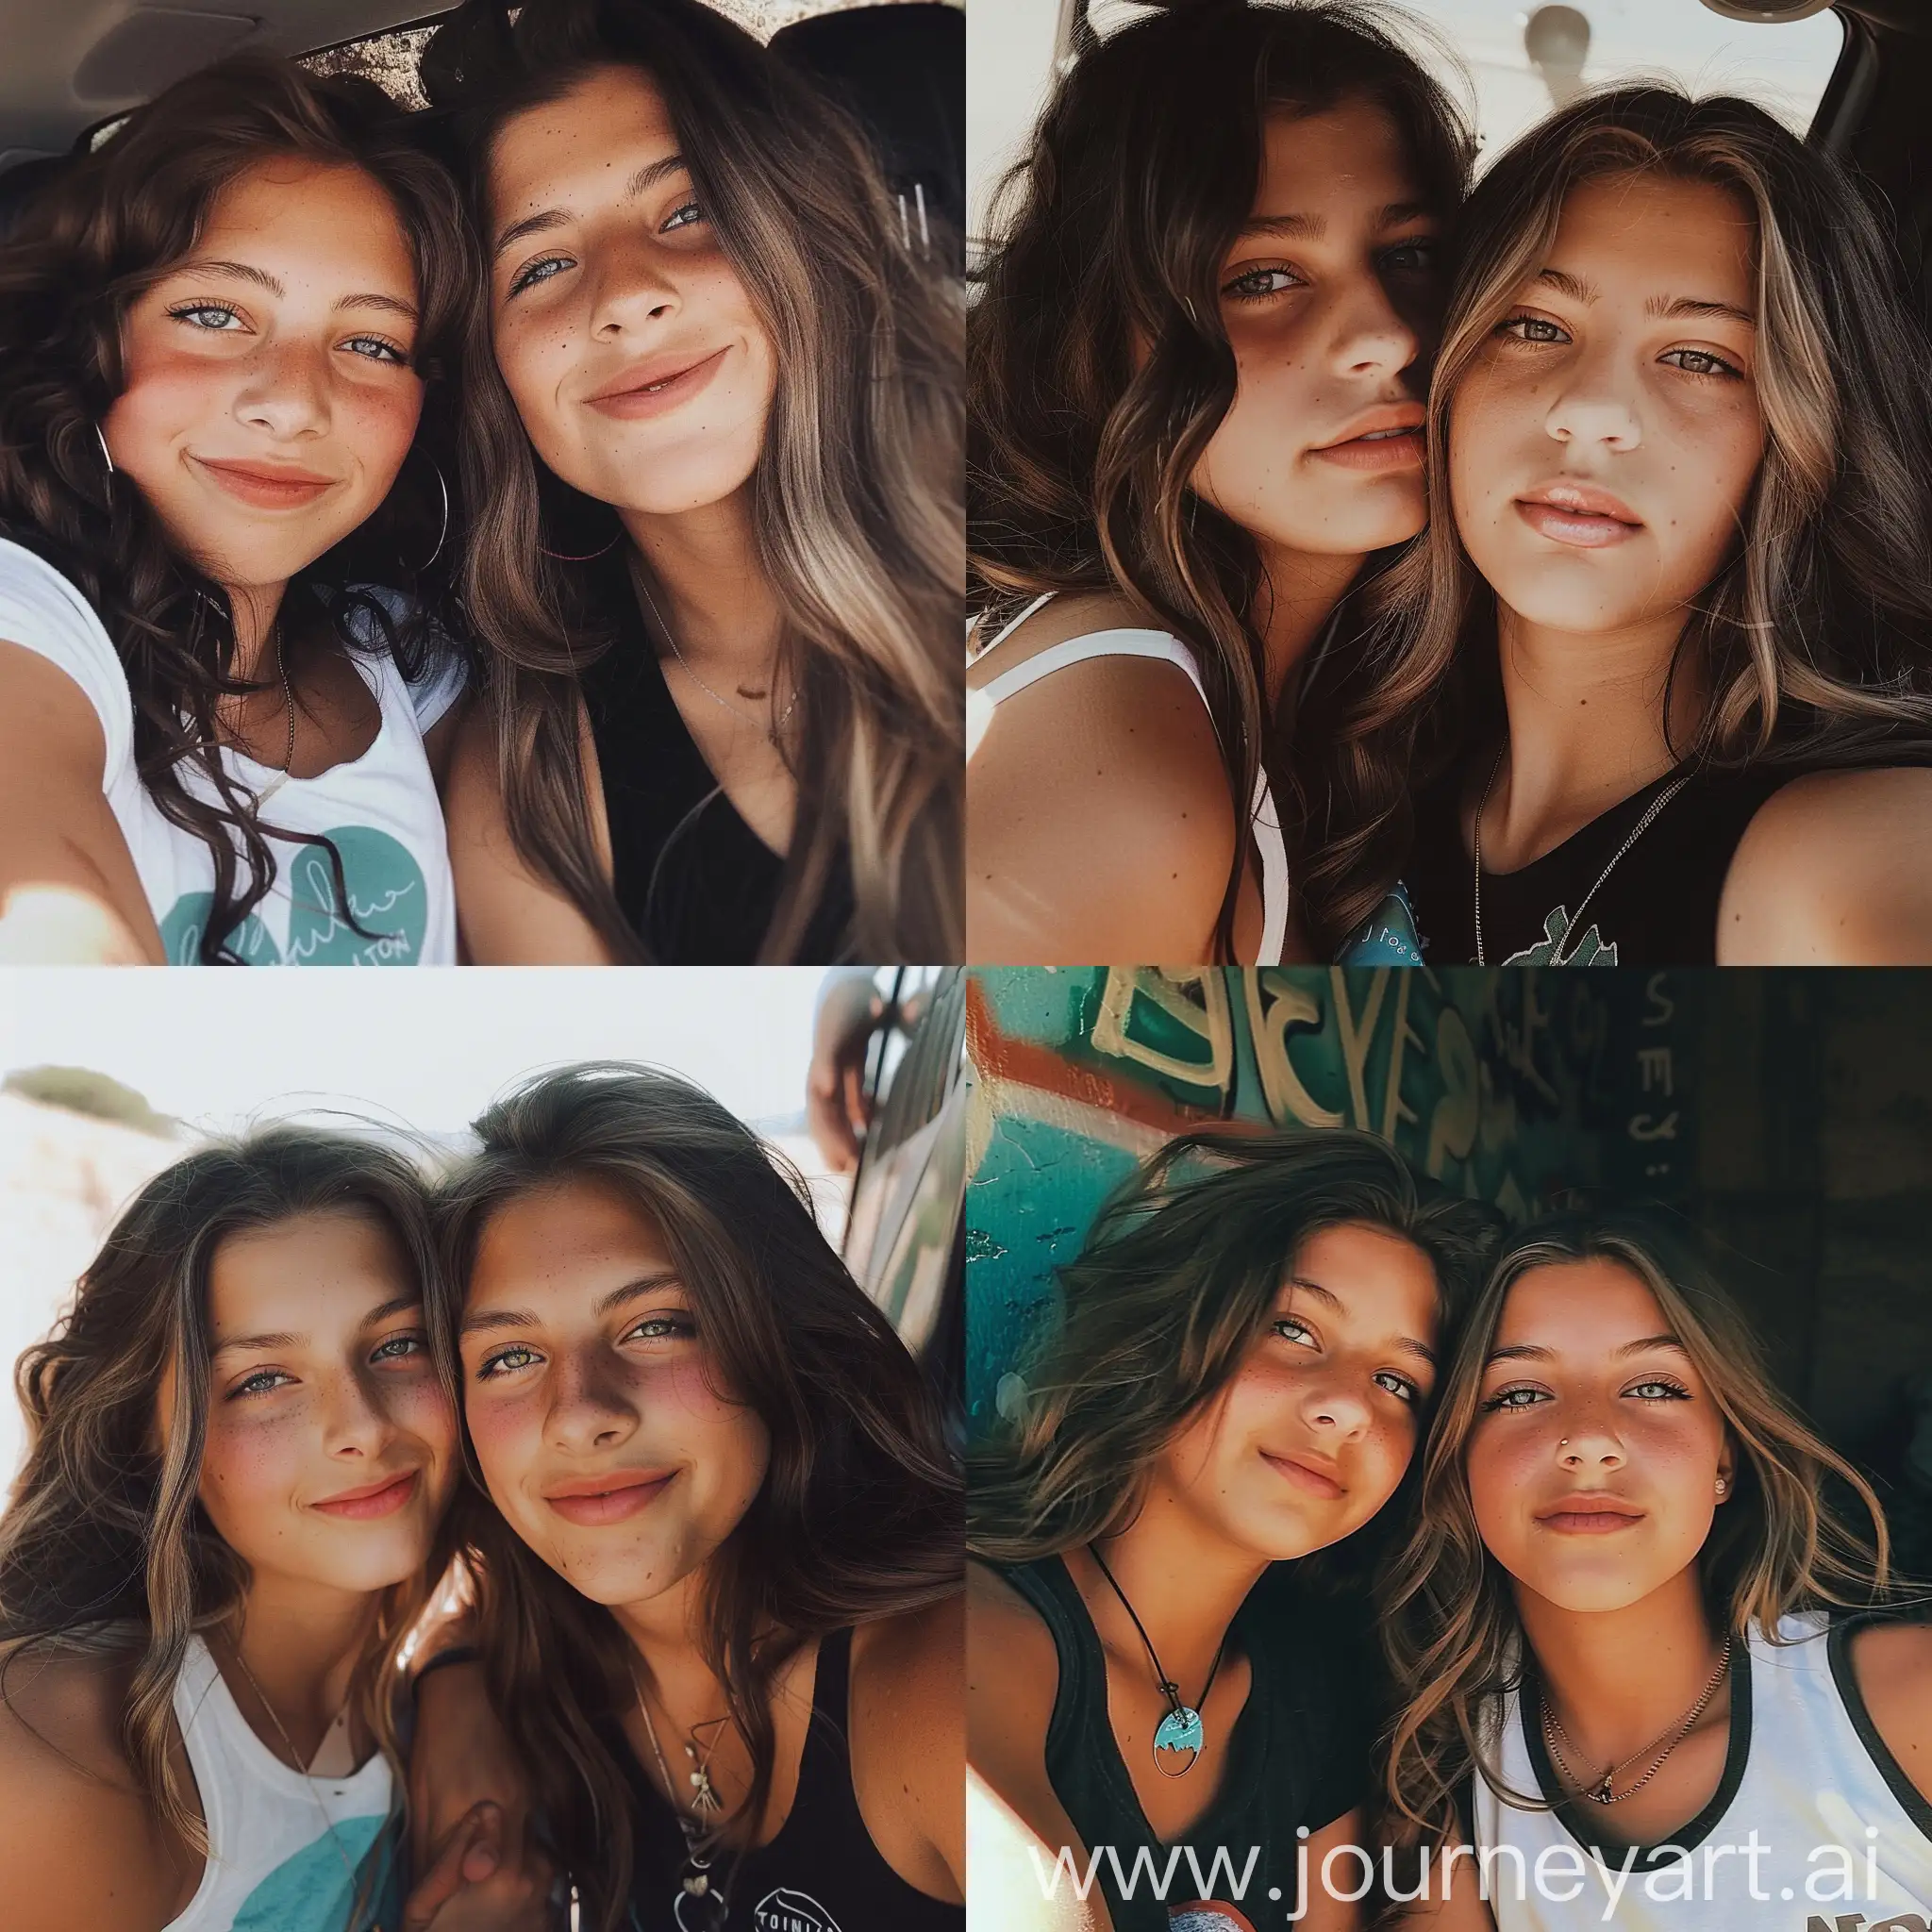 VSCO-Style-Selfie-of-Two-Girls-Aesthetic-Instagram-Portrait